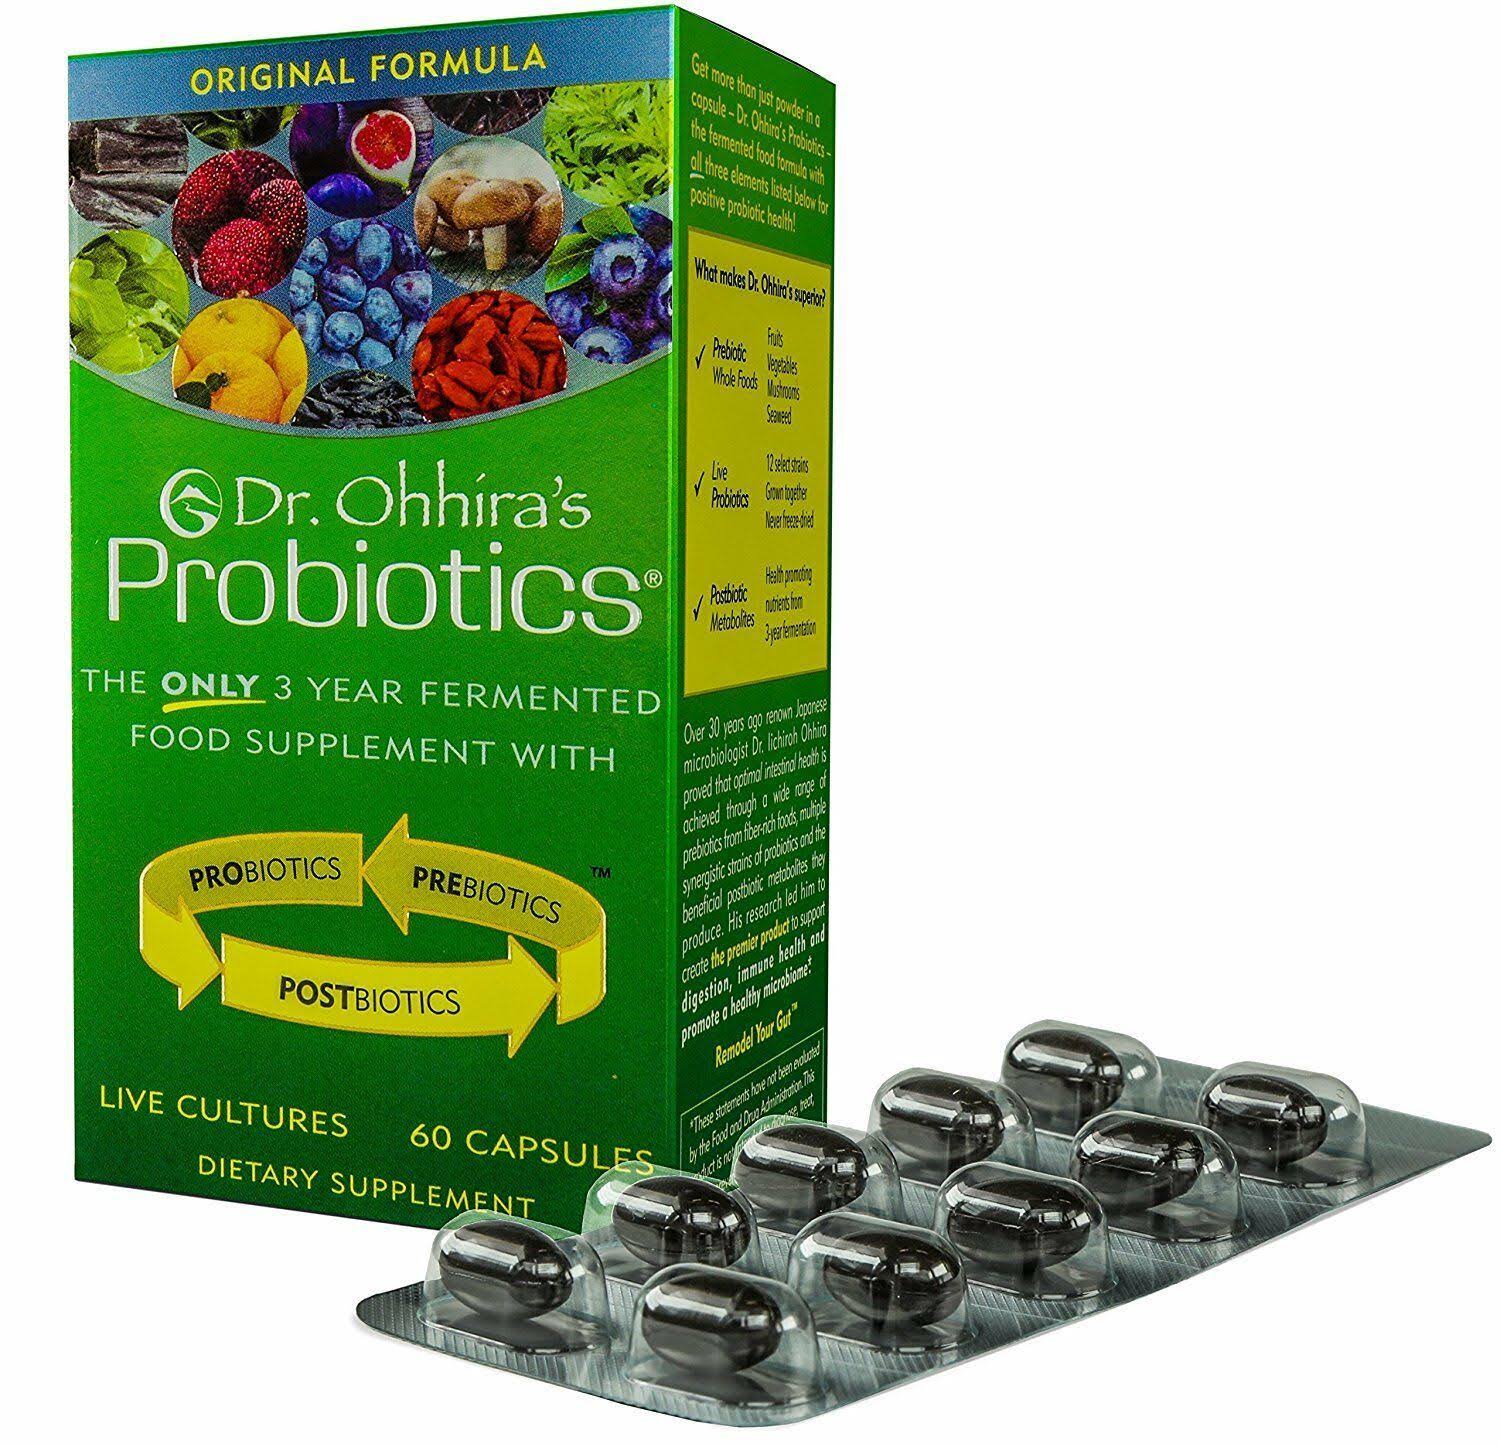 Essential Formulas Dr Ohhira's Probiotics Original Formula Dietary Supplement - 120ct